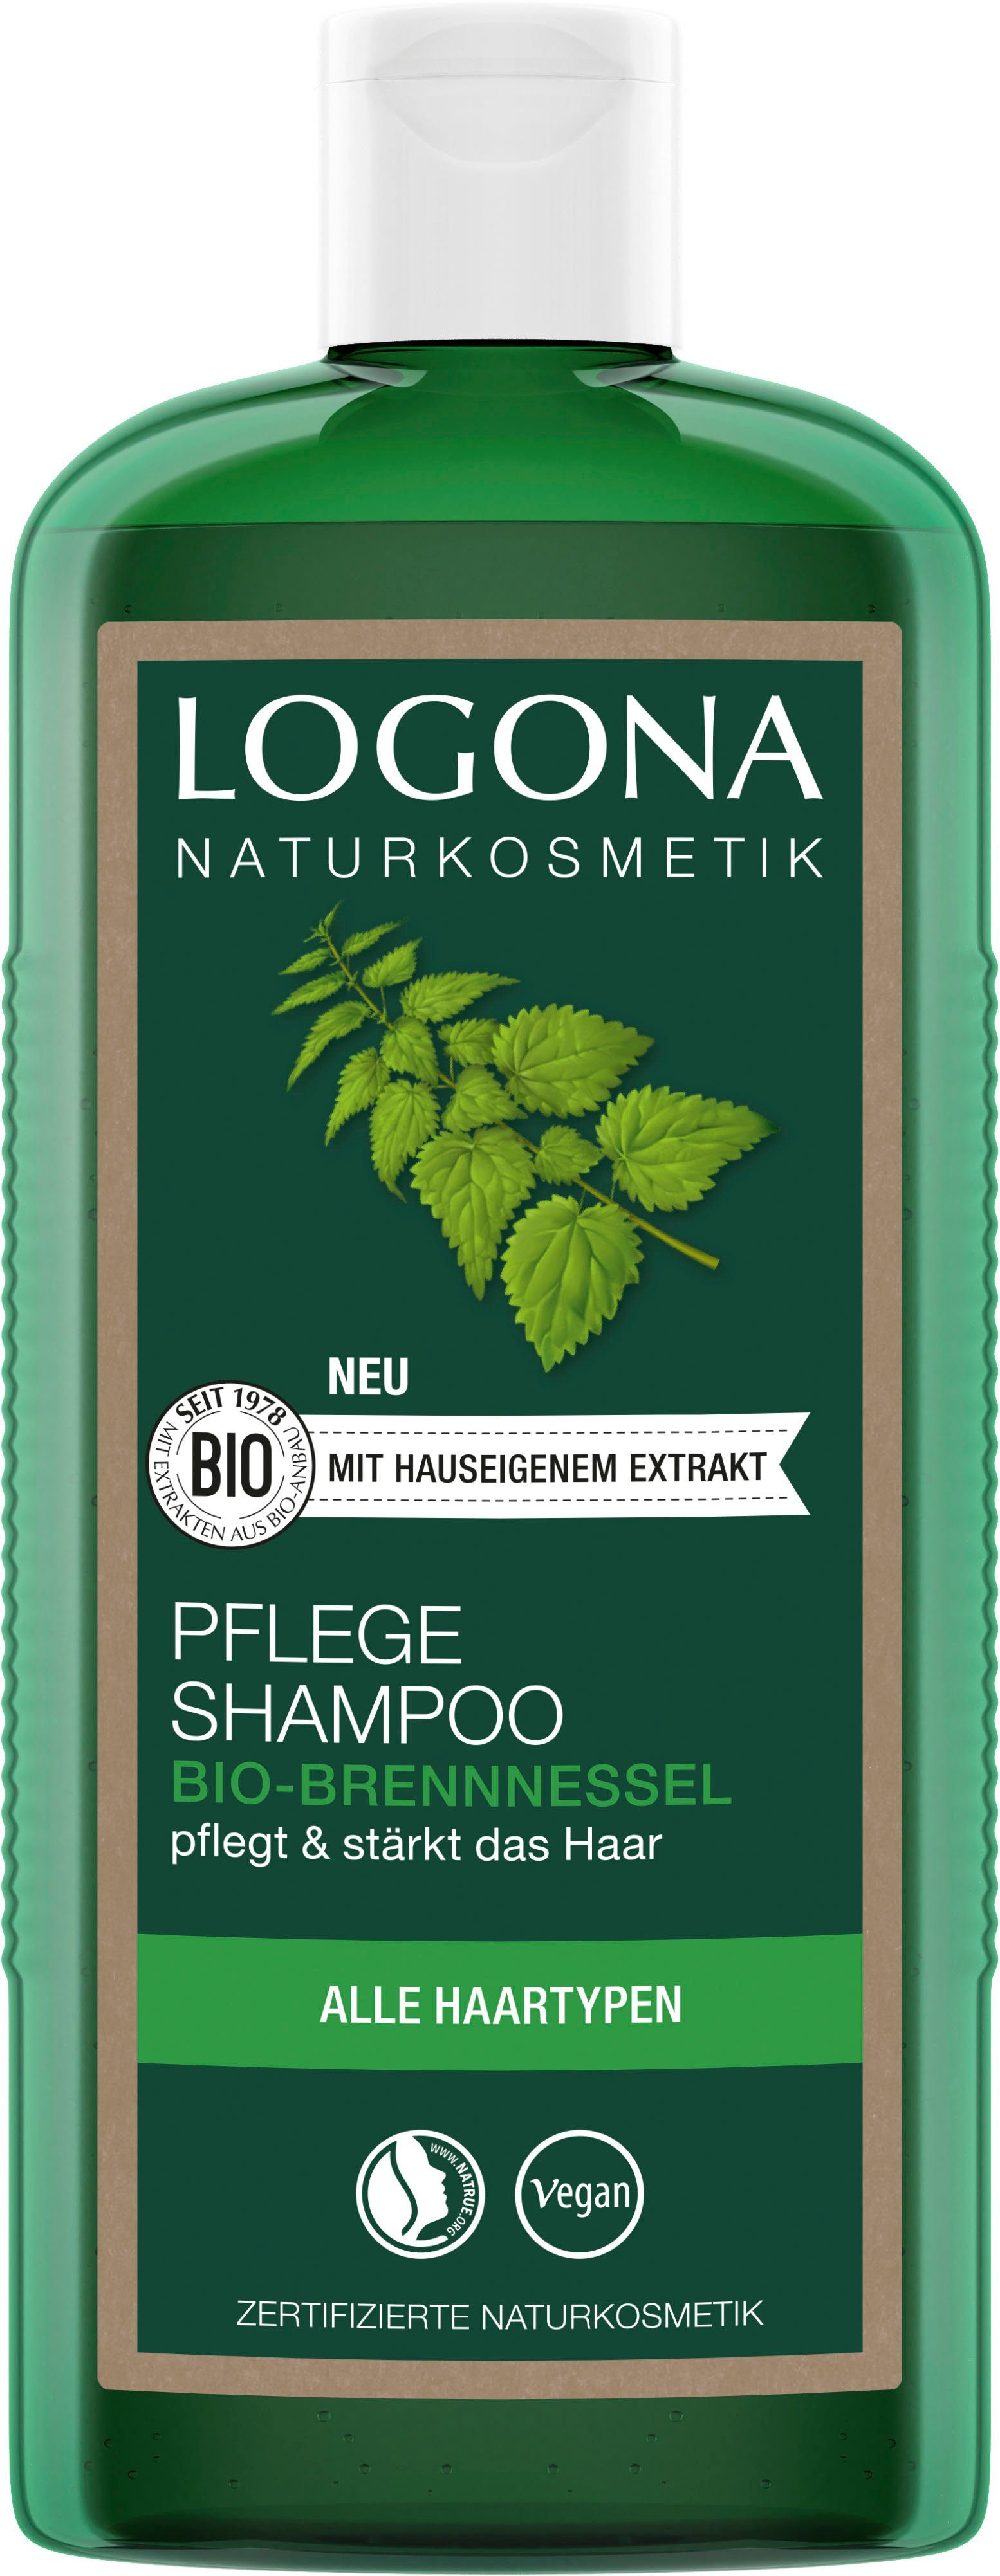 LOGONA Haarshampoo Logona Pflege Shampoo und Reinigung Familie ganze für die Haartypen alle Milde Bio-Brennnessel